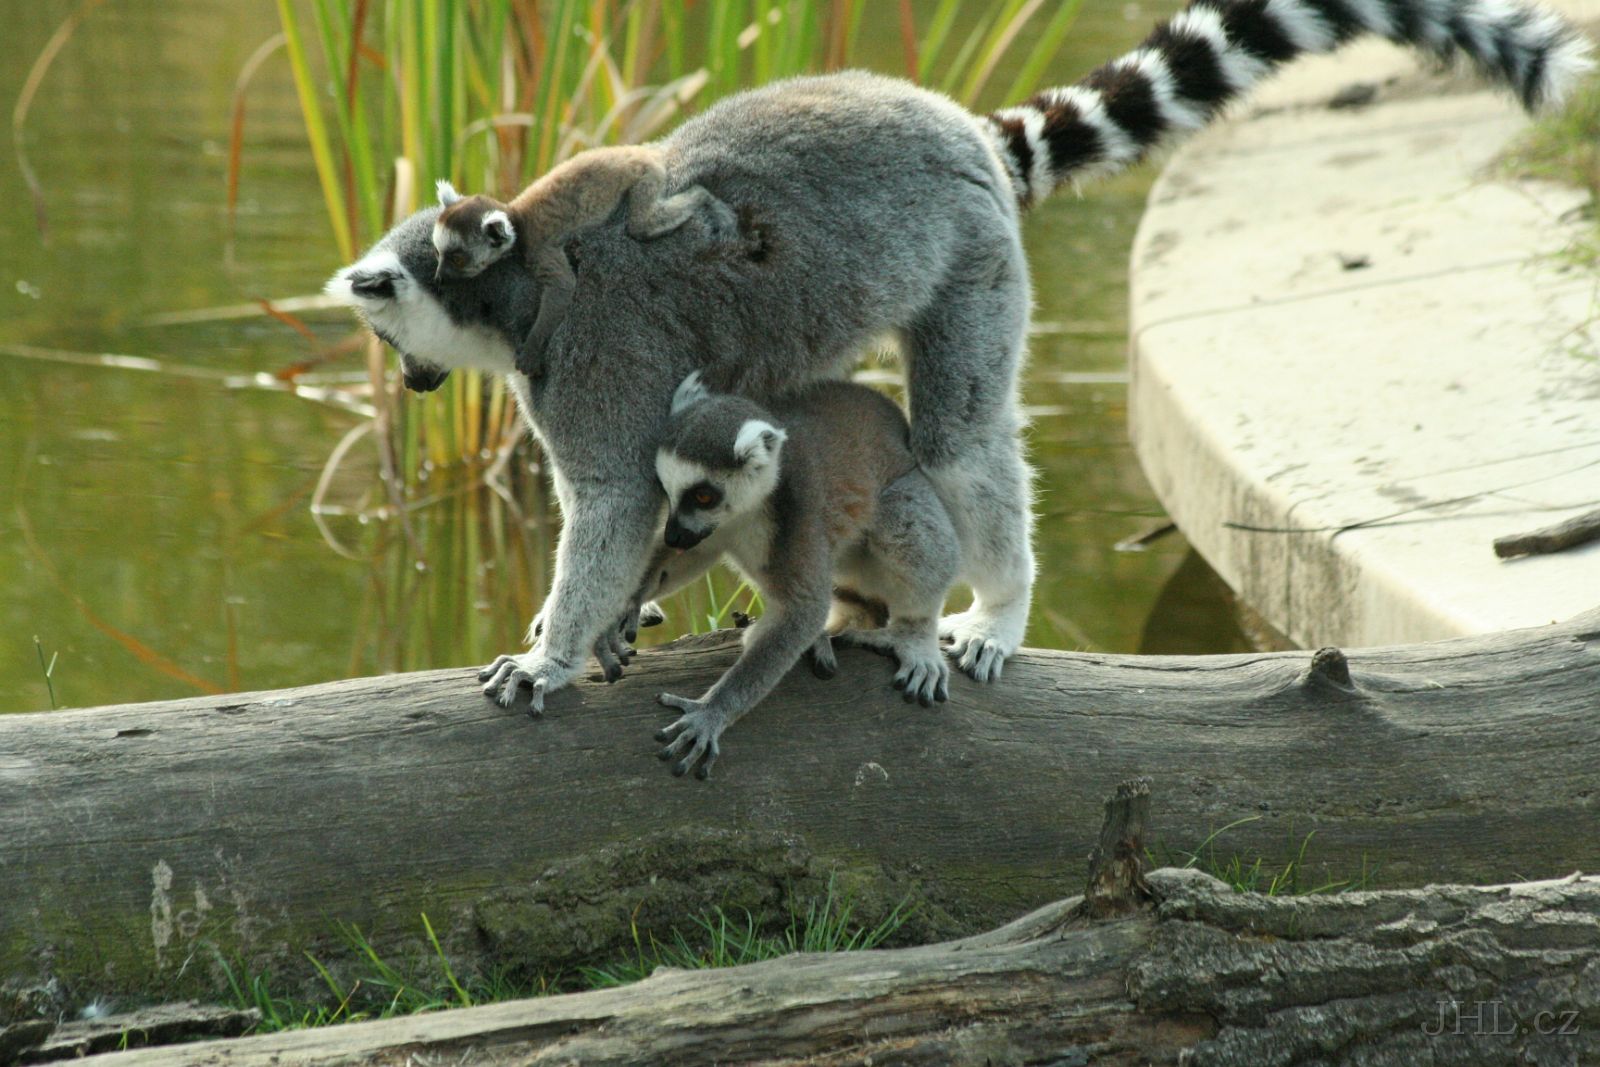 060917c863.JPG - Lemur Kata (Lemur catta)